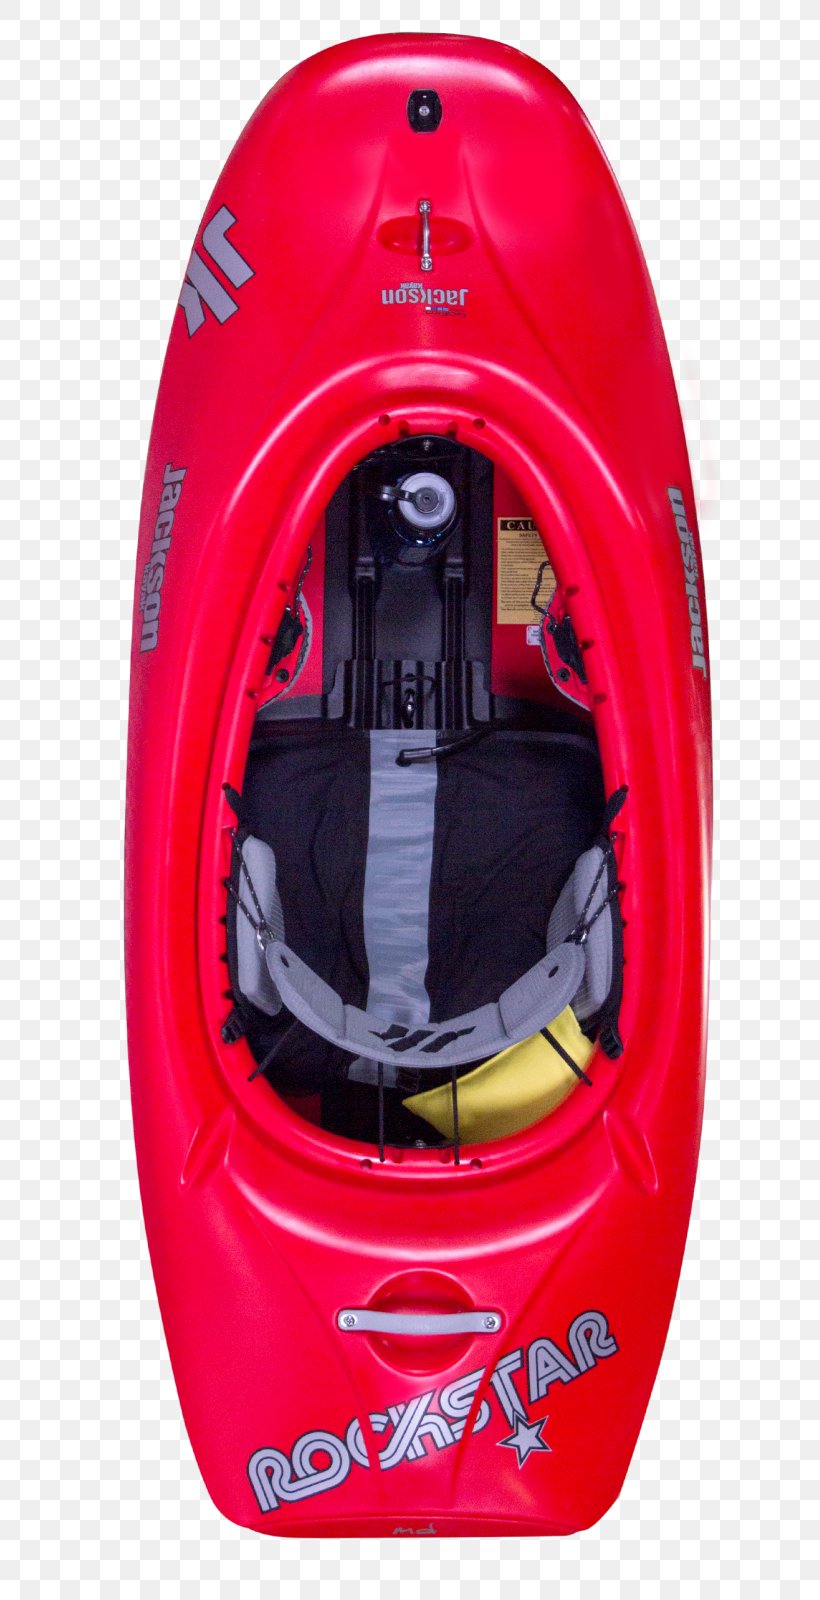 Jackson Kayak, Inc. Rockstar Whitewater Kayaking, PNG, 741x1600px, Kayak, Autofelge, Child, Headgear, Helmet Download Free